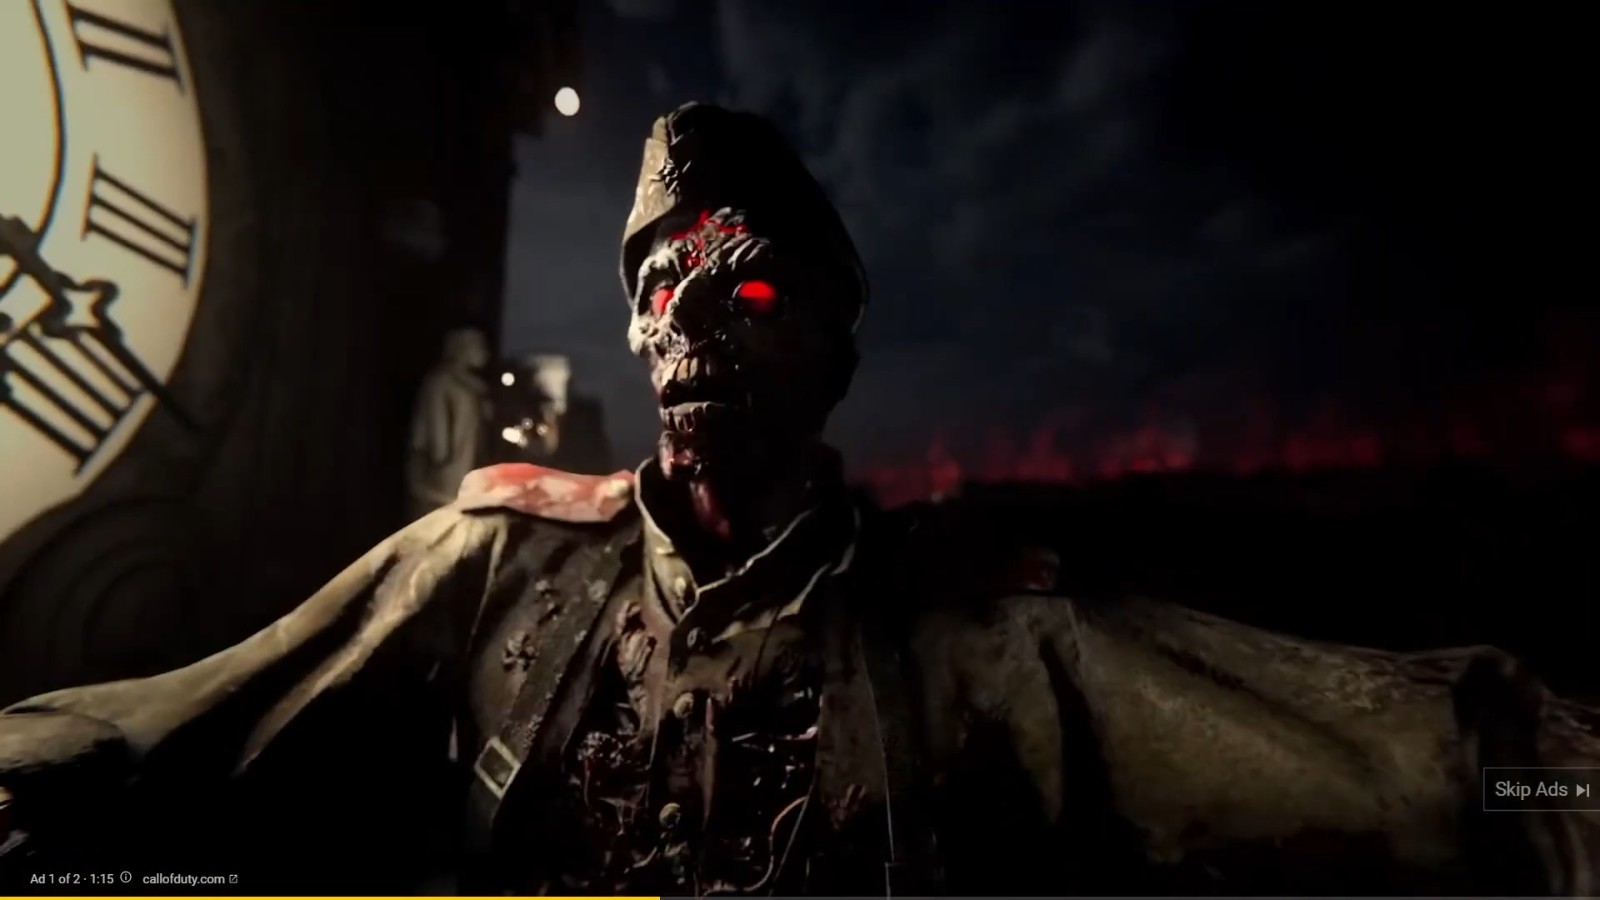 《使命召唤18》僵尸模式正式预告 魔幻特种部队大战不死军团